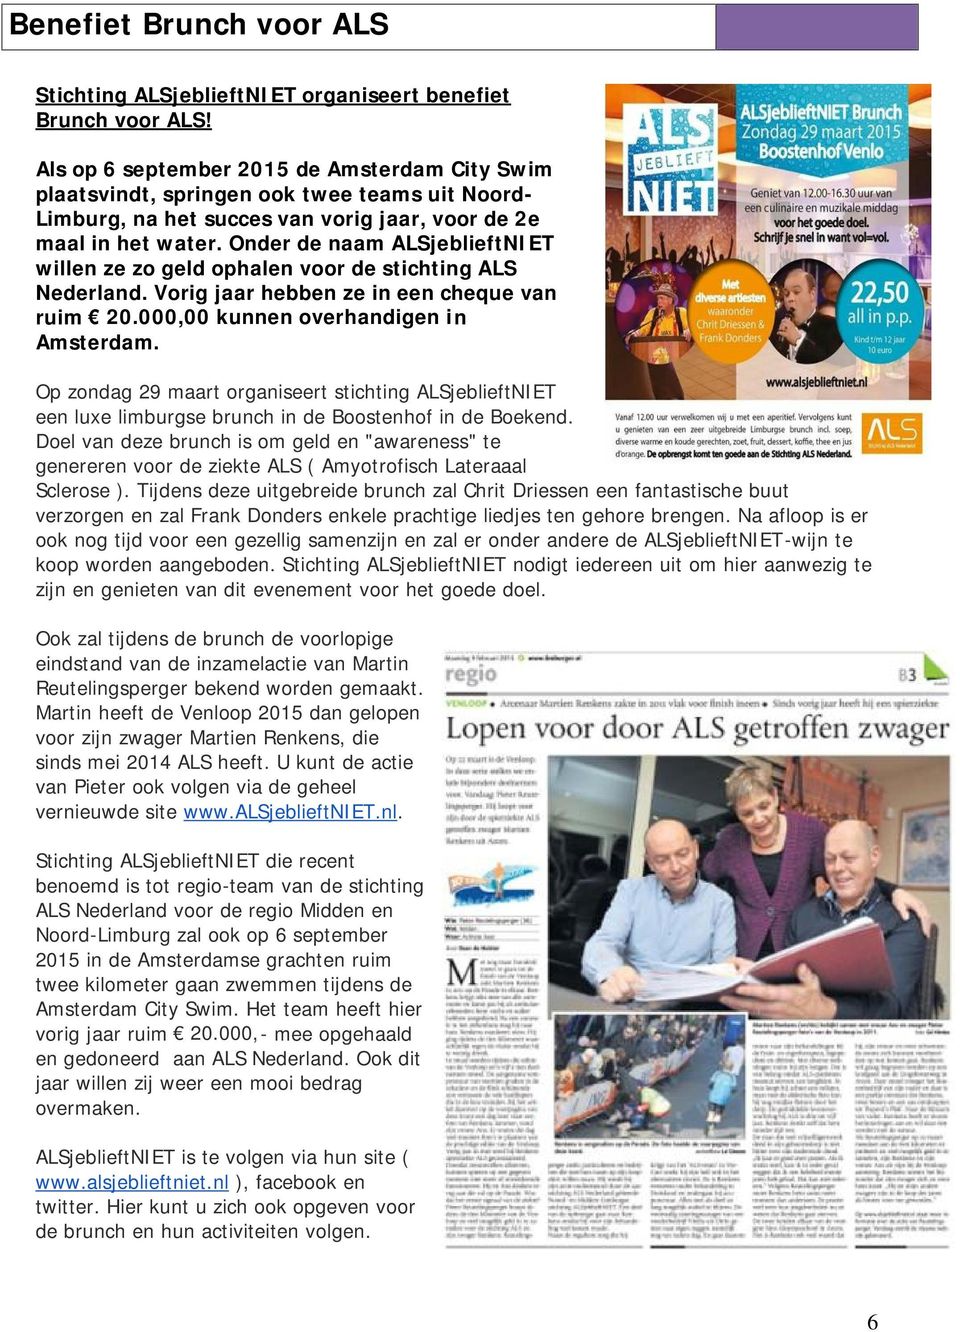 Onder de naam ALSjeblieftNIET willen ze zo geld ophalen voor de stichting ALS Nederland. Vorig jaar hebben ze in een cheque van ruim 20.000,00 kunnen overhandigen in Amsterdam.